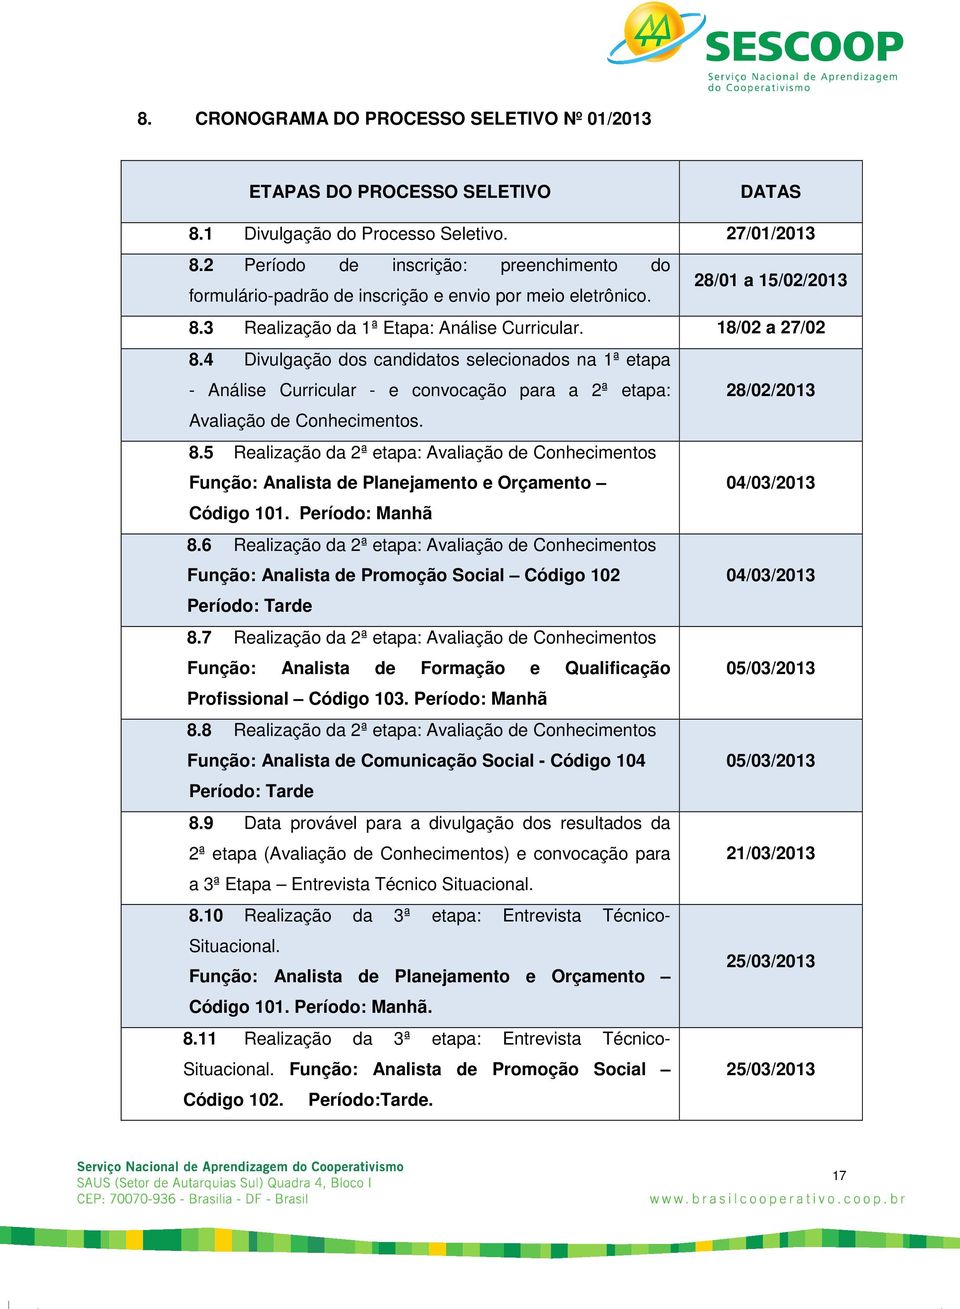 4 Divulgação dos candidatos selecionados na 1ª etapa - Análise Curricular - e convocação para a 2ª etapa: 28/02/2013 Avaliação de Conhecimentos. 8.